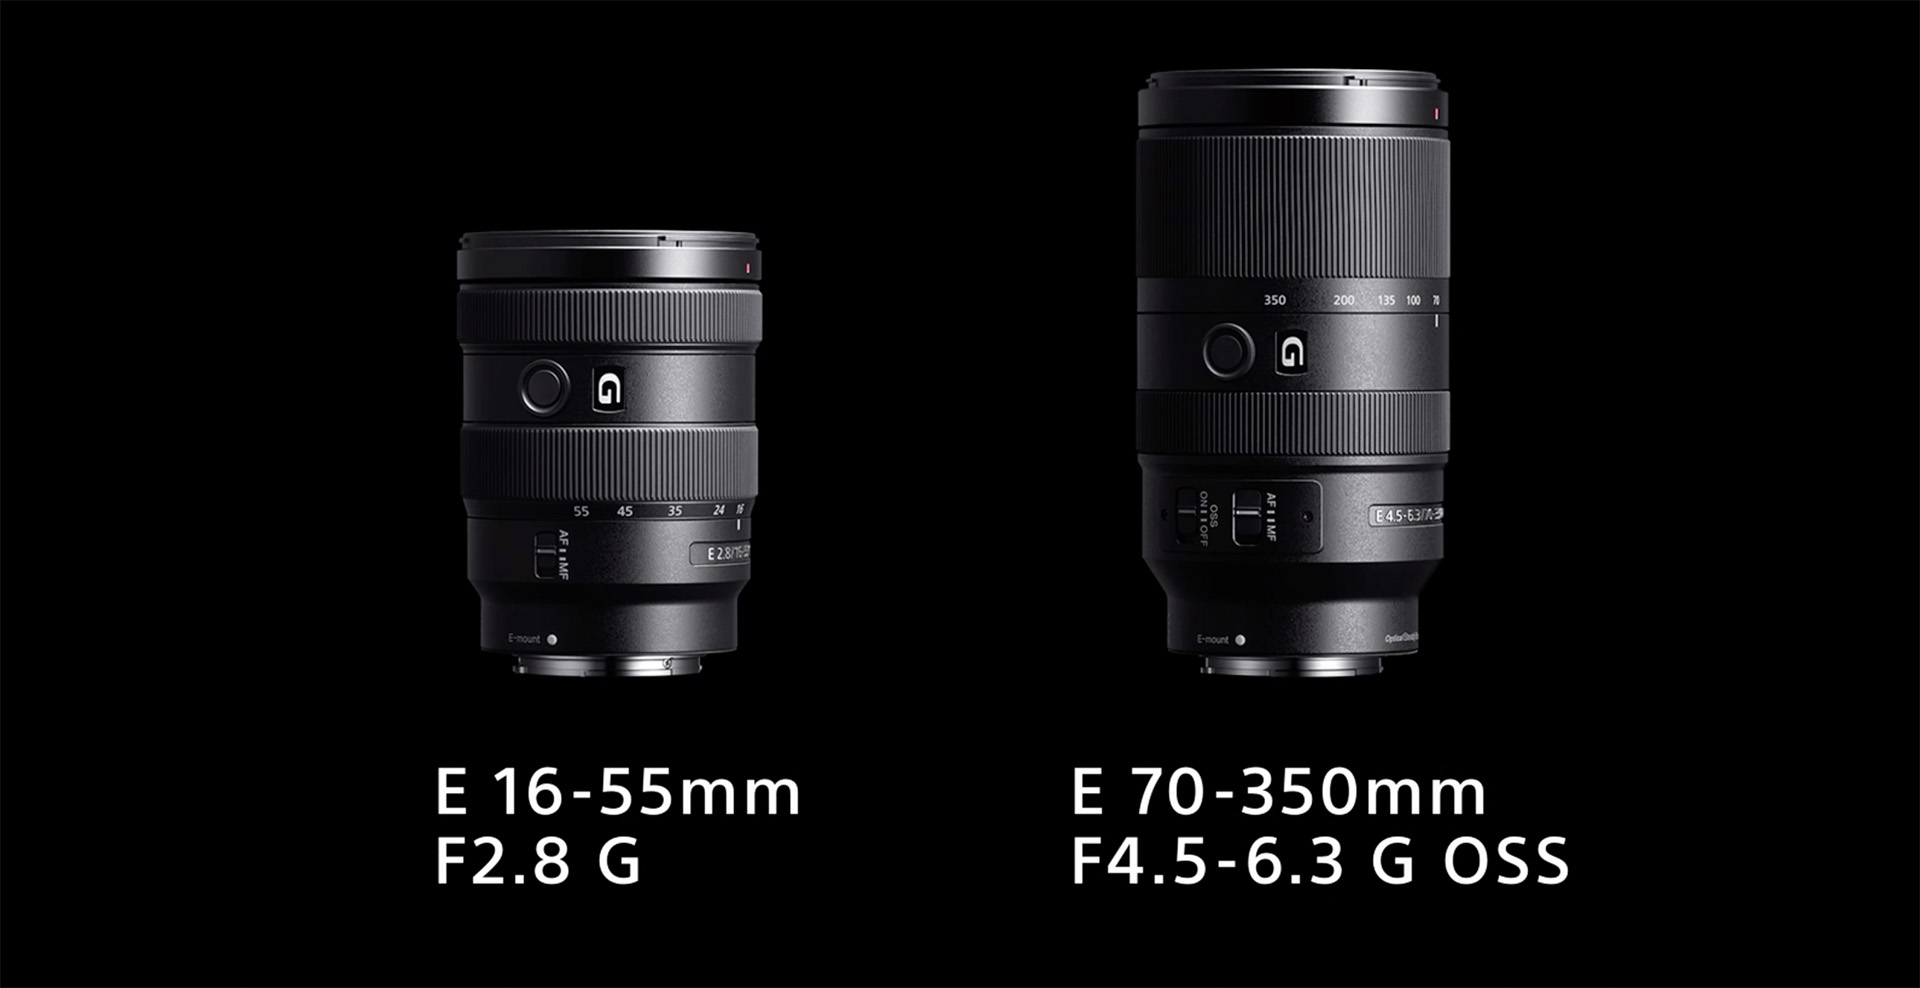 New Sony APS-C lenses